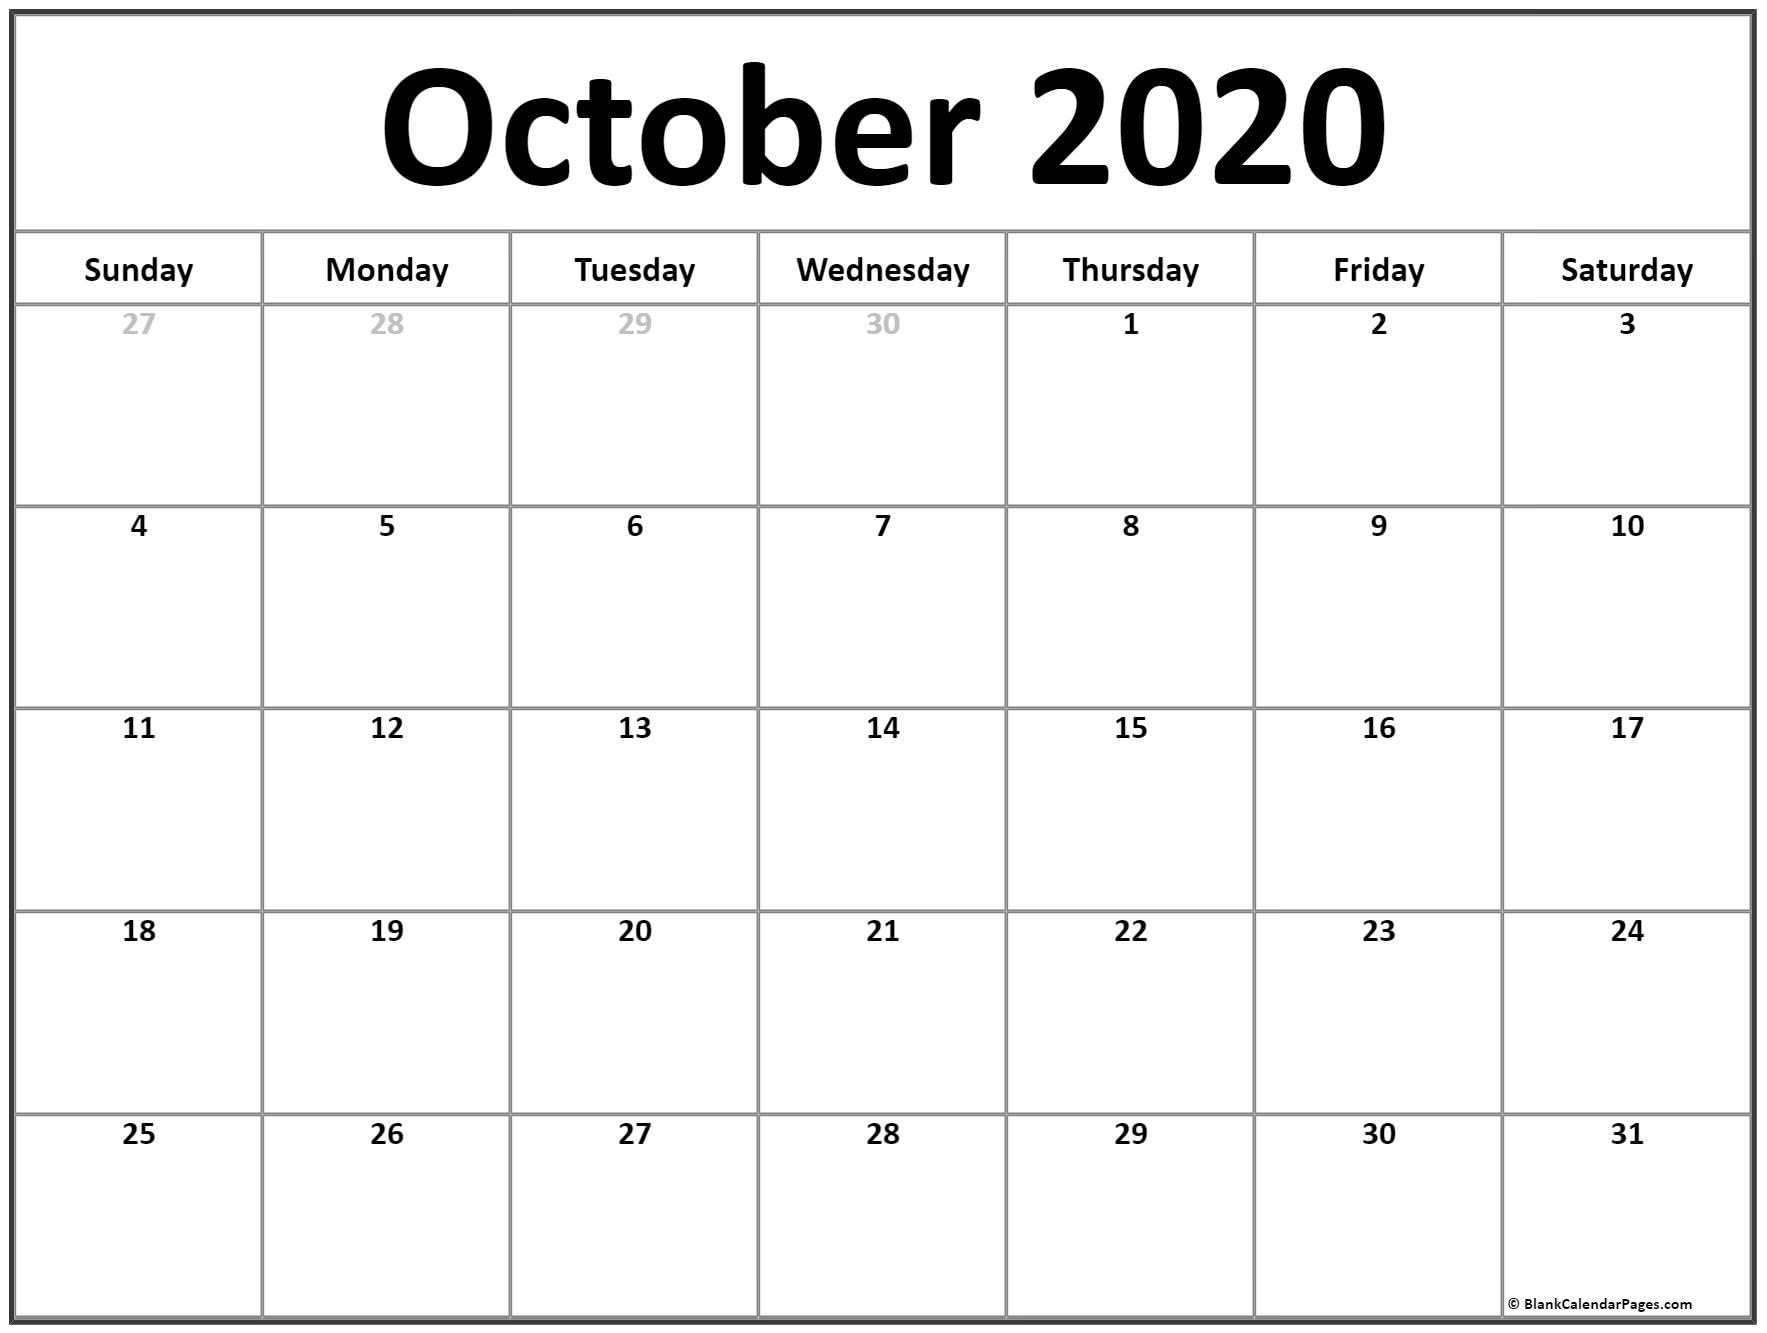 Zodiac Calendar October 2020 Calendar Printables Free Templates